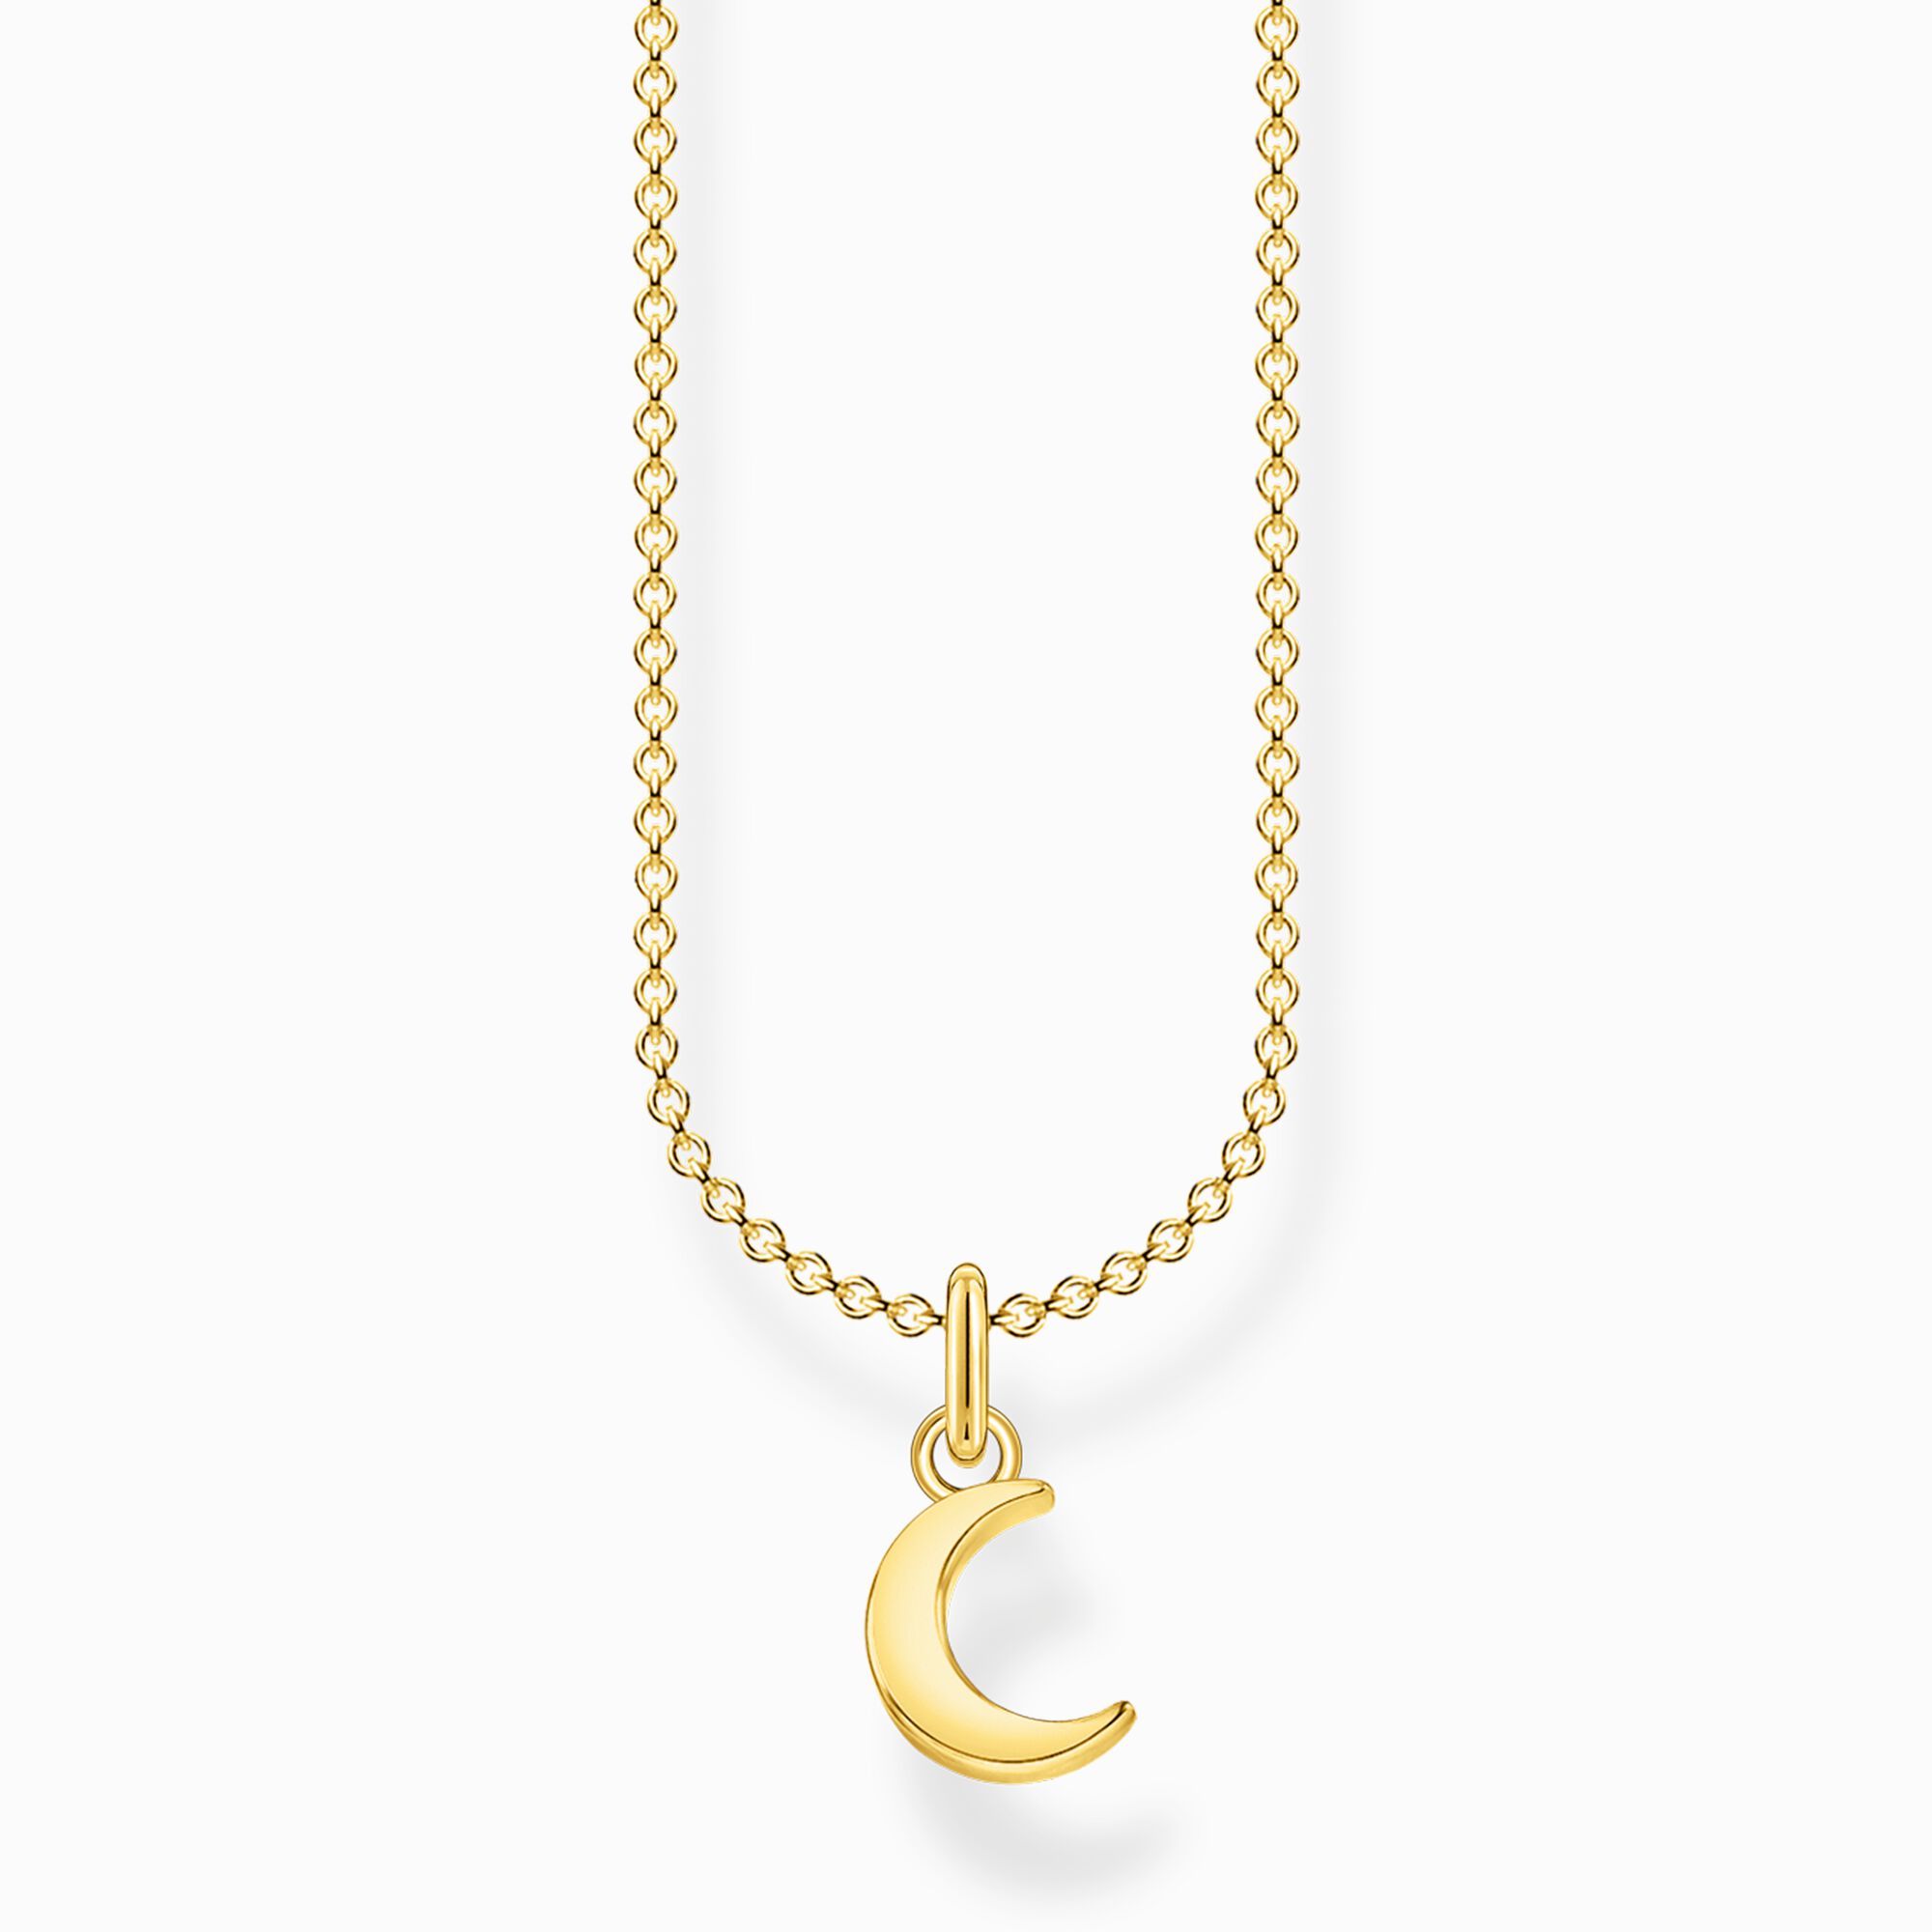 Cadena luna oro de la colección Charming Collection en la tienda online de THOMAS SABO